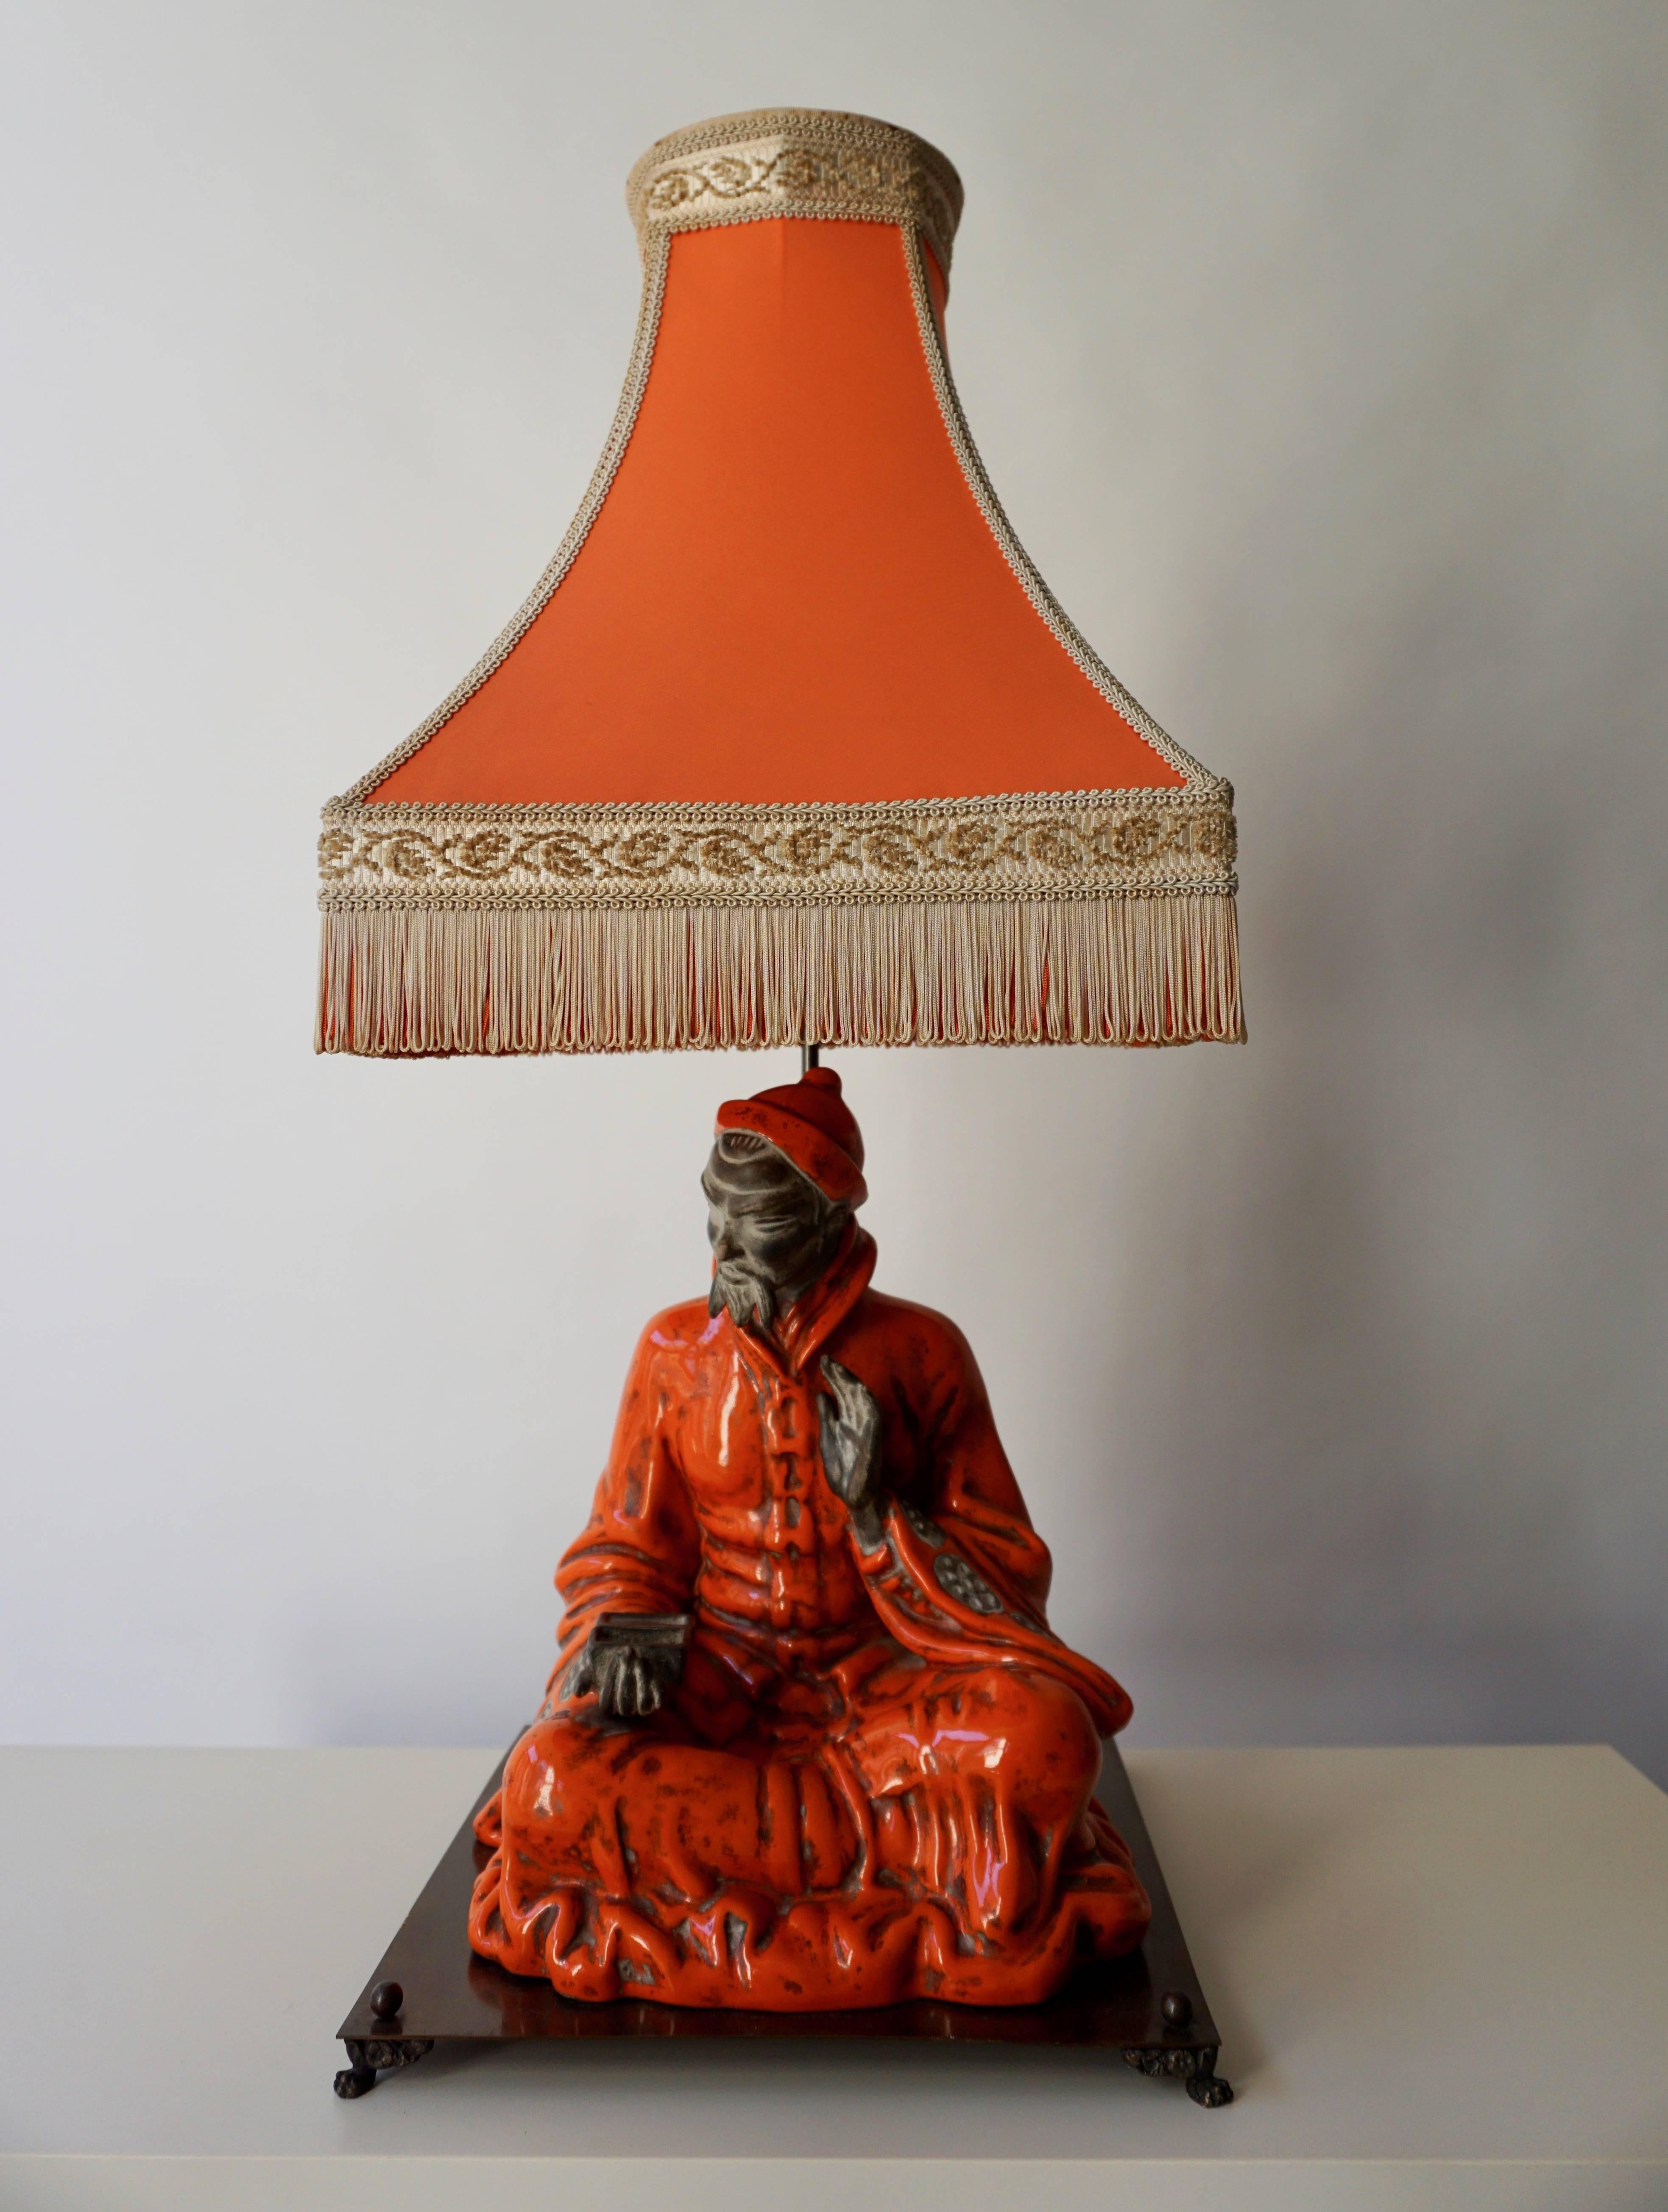 Une lampe de table en céramique personnalisée représentant un philosophe classique asiatique sur une base en métal.
Mesures : Hauteur lampe de table avec abat-jour 77 cm.
Hauteur philosophe 37 cm, largeur 30 cm, profondeur 30 cm.